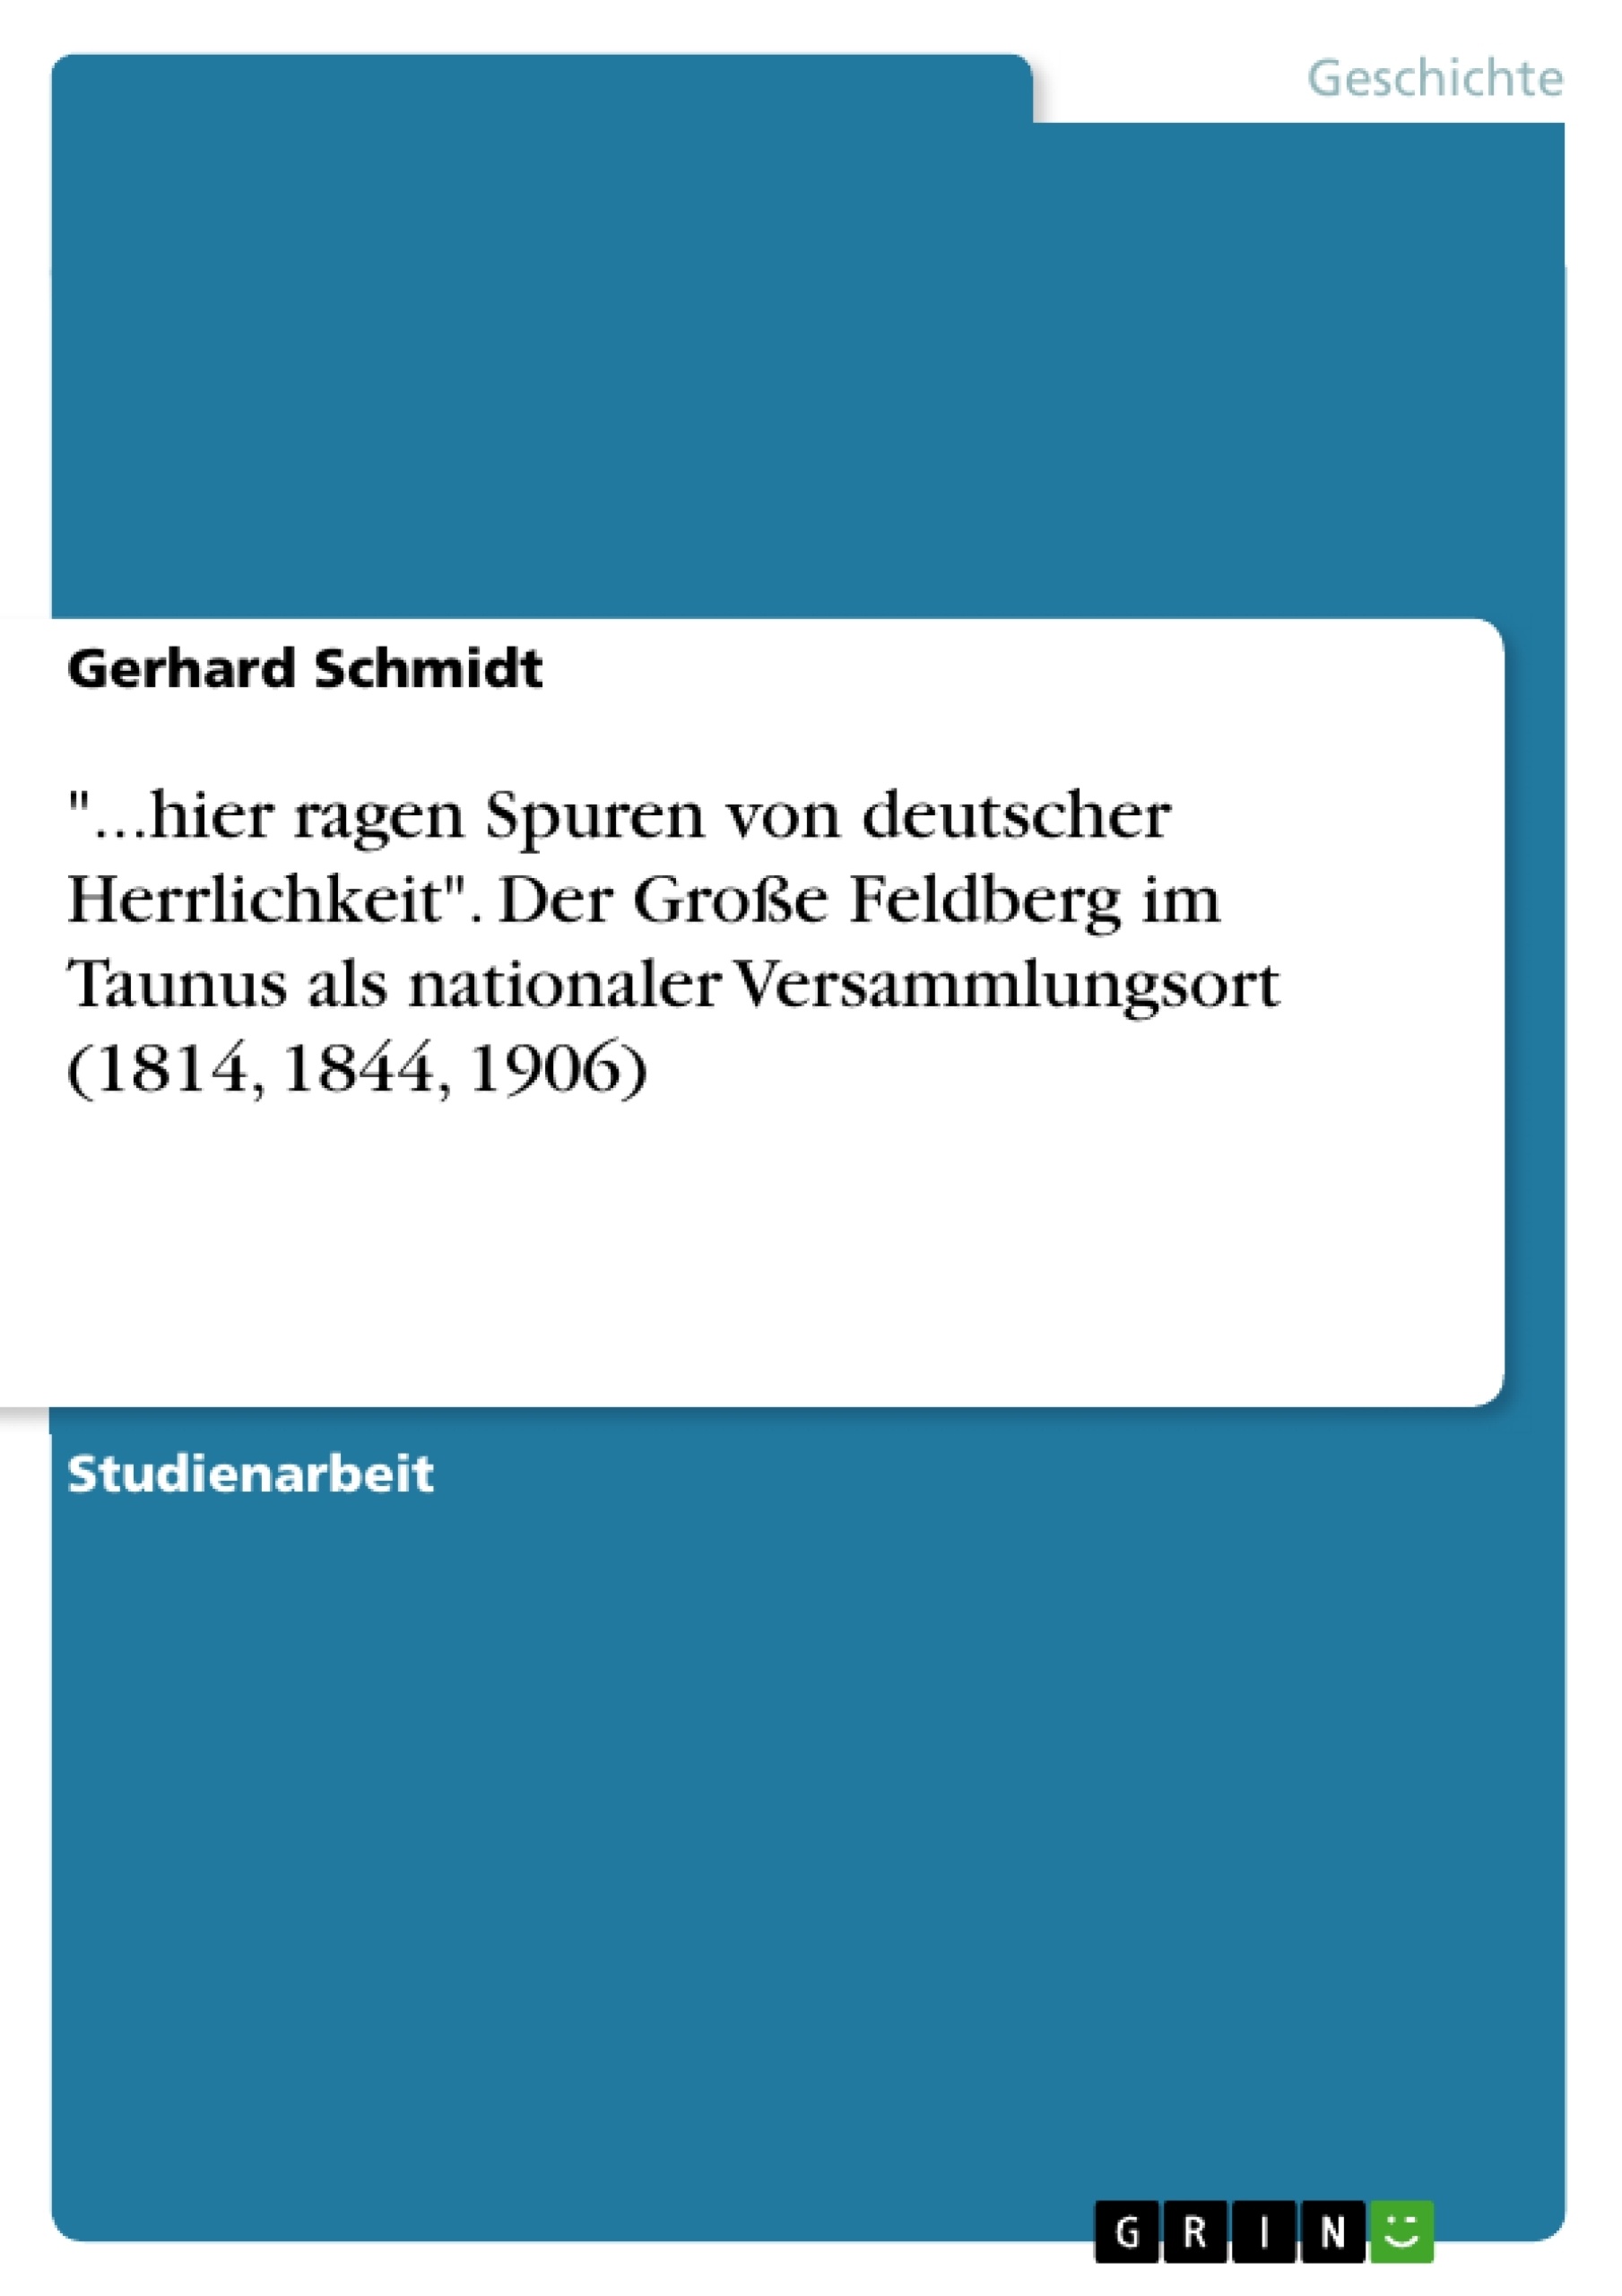 Titel: "...hier ragen Spuren von deutscher Herrlichkeit". Der Große Feldberg im Taunus als nationaler Versammlungsort (1814, 1844, 1906)